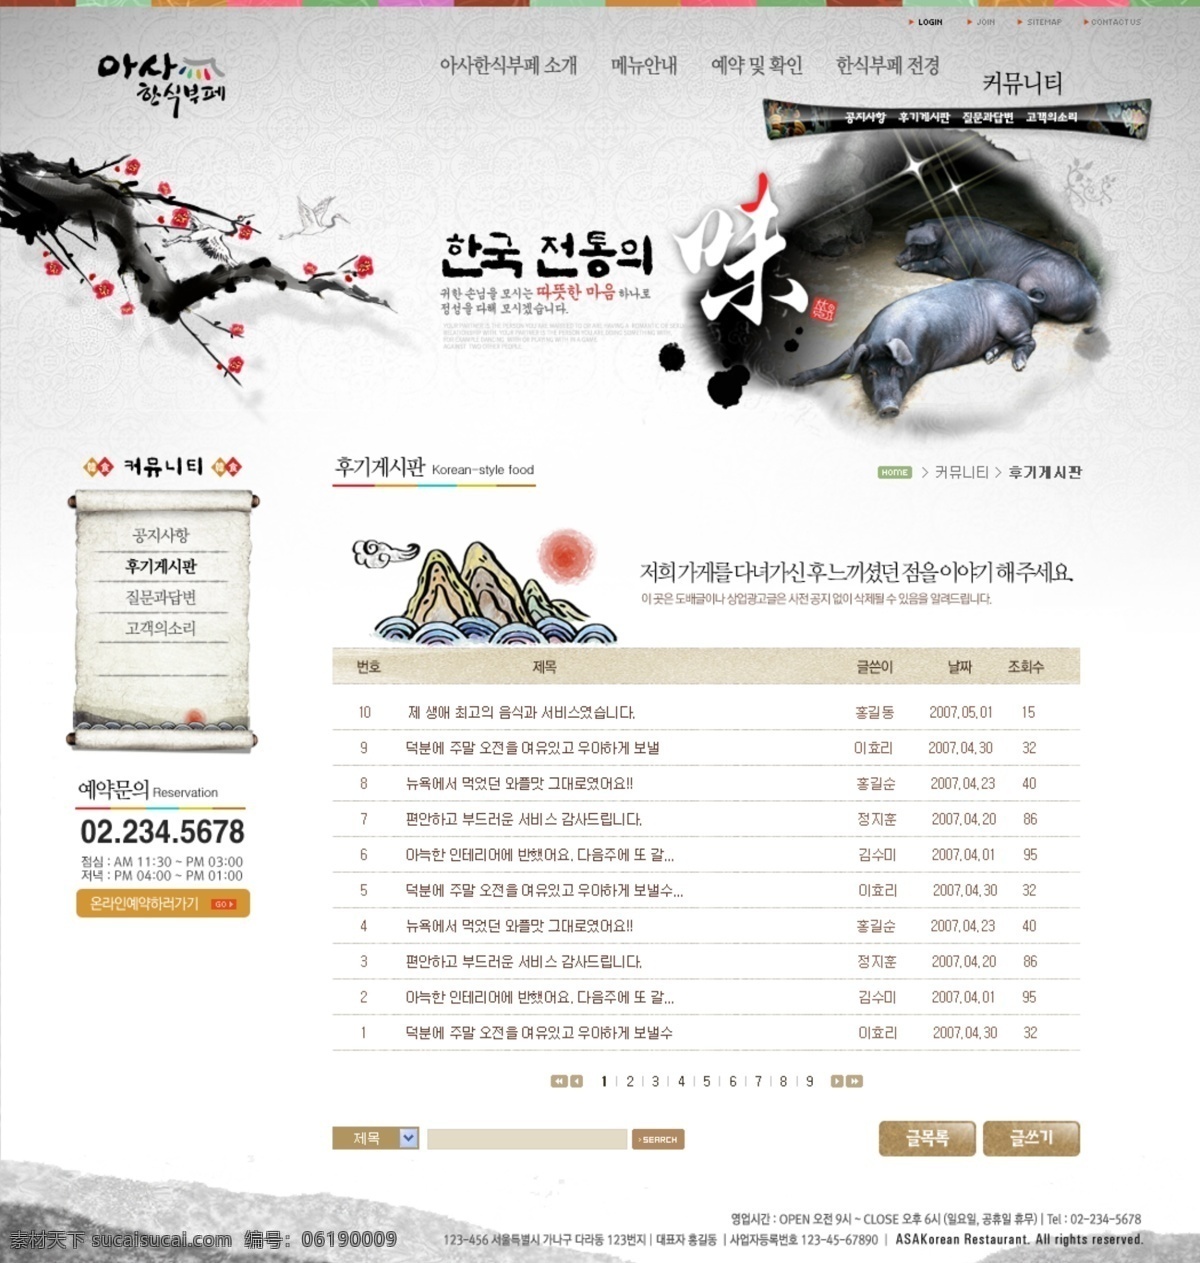 古典 水墨 风格 网页 分层 源文件 网页设计 网页模板 网页界面 界面设计 ui设计 网页版式 版式设计 网页布局 韩国模板 墨迹 墨痕 韩文模板 web